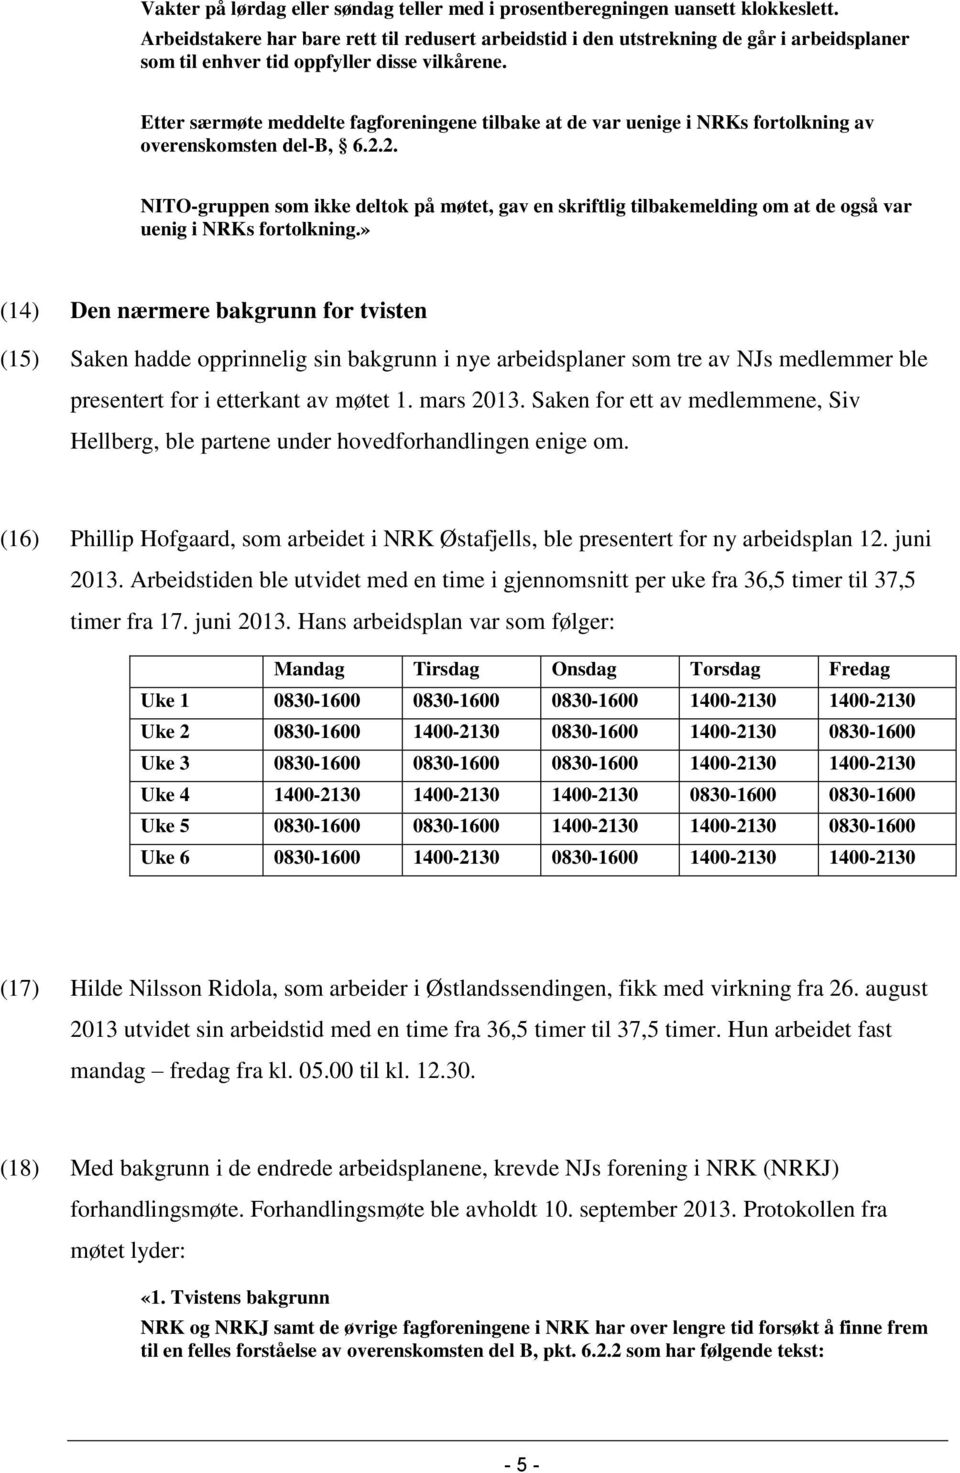 Etter særmøte meddelte fagforeningene tilbake at de var uenige i NRKs fortolkning av overenskomsten del-b, 6.2.